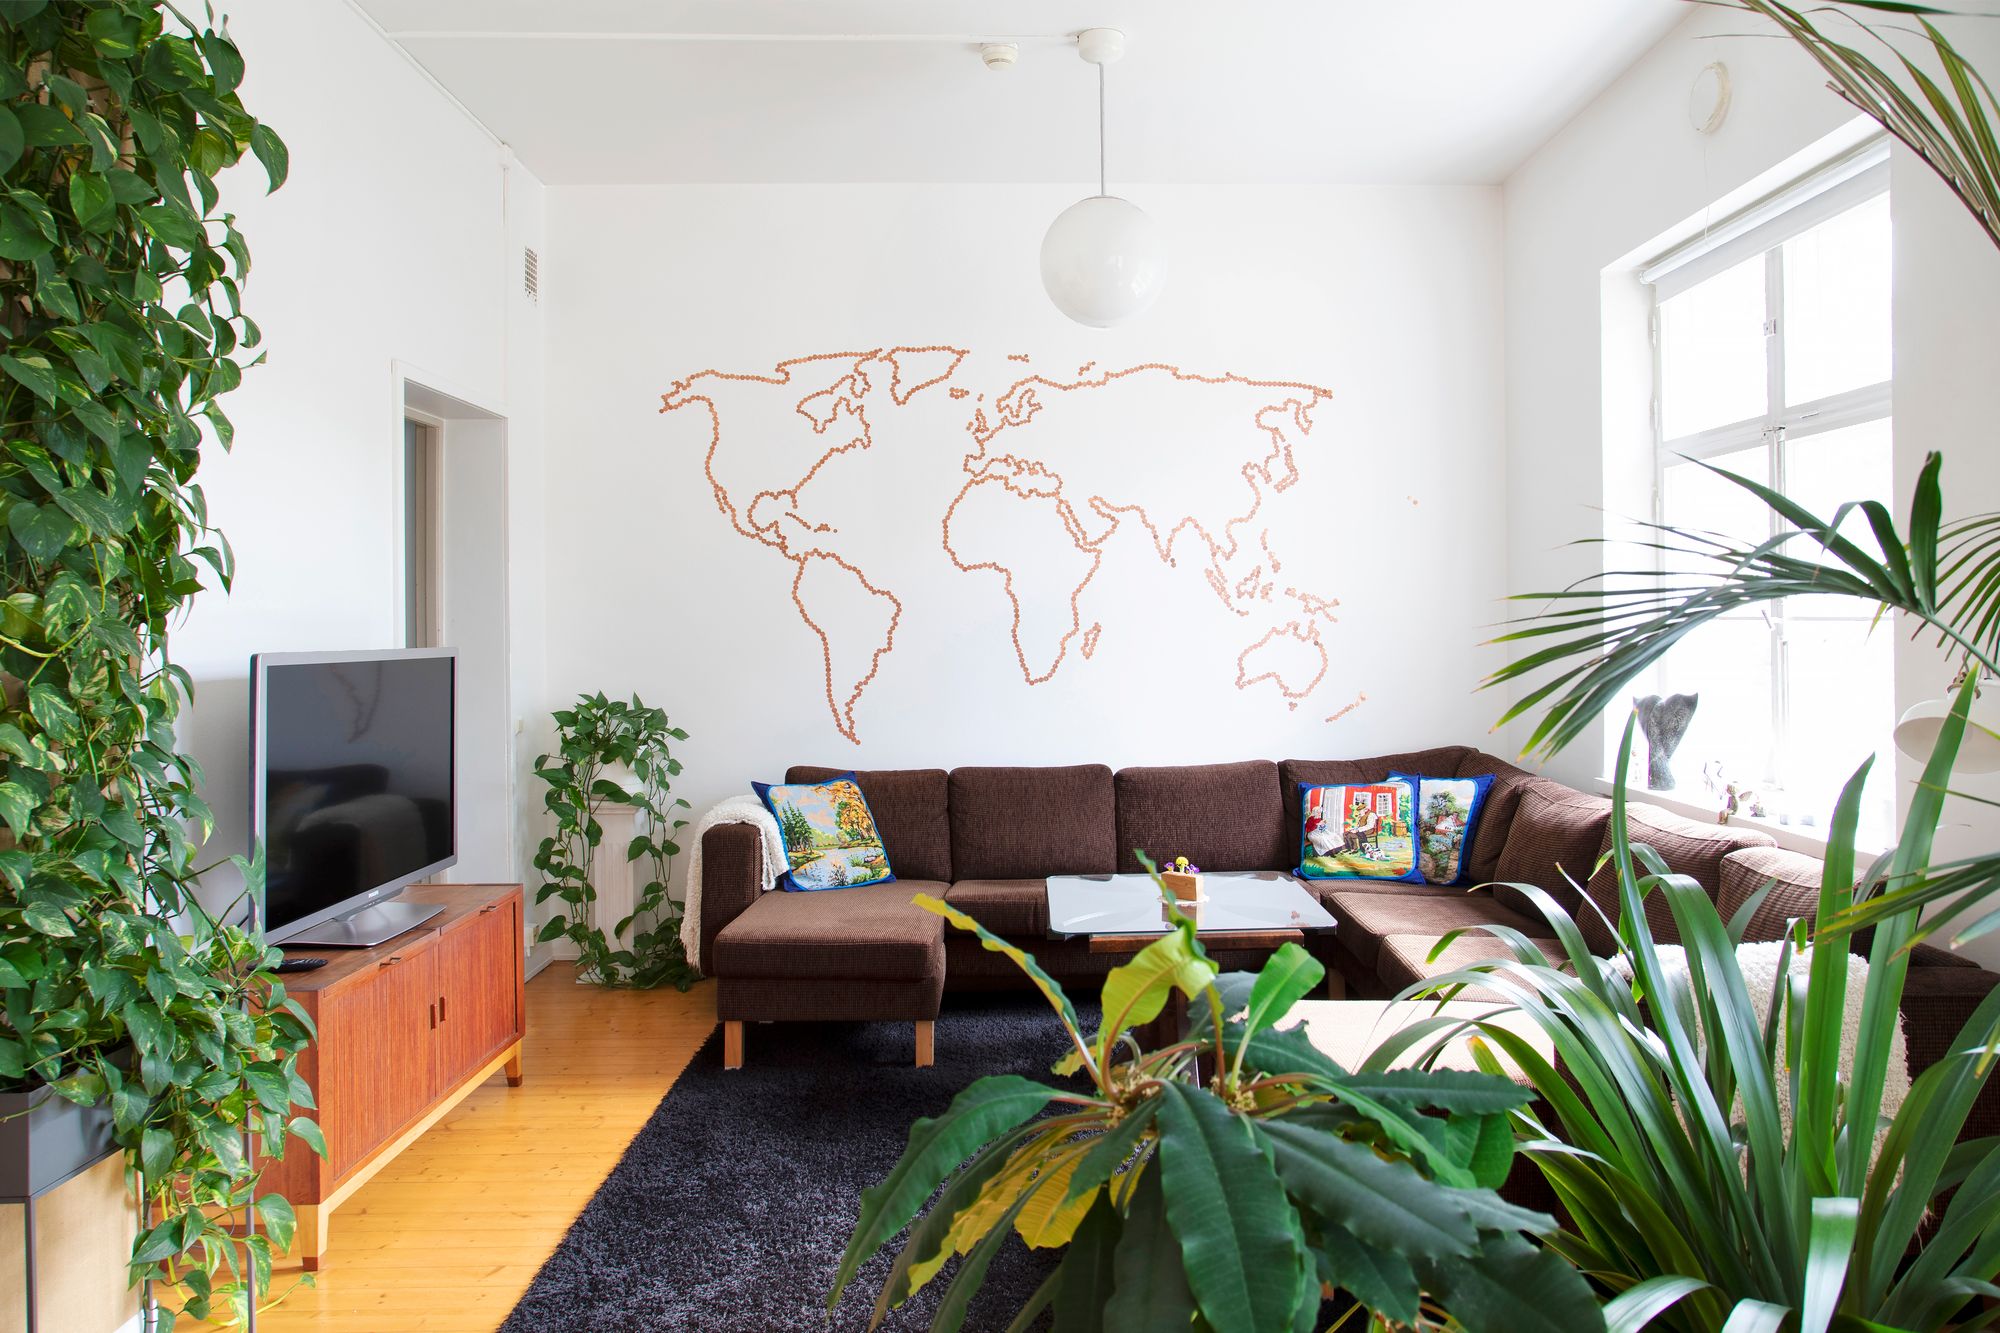 Olohuoneen seinää koristaa yhden, kahden ja viiden sentin kolikoista piirtyvä maailmankartta. © Suvi Elo